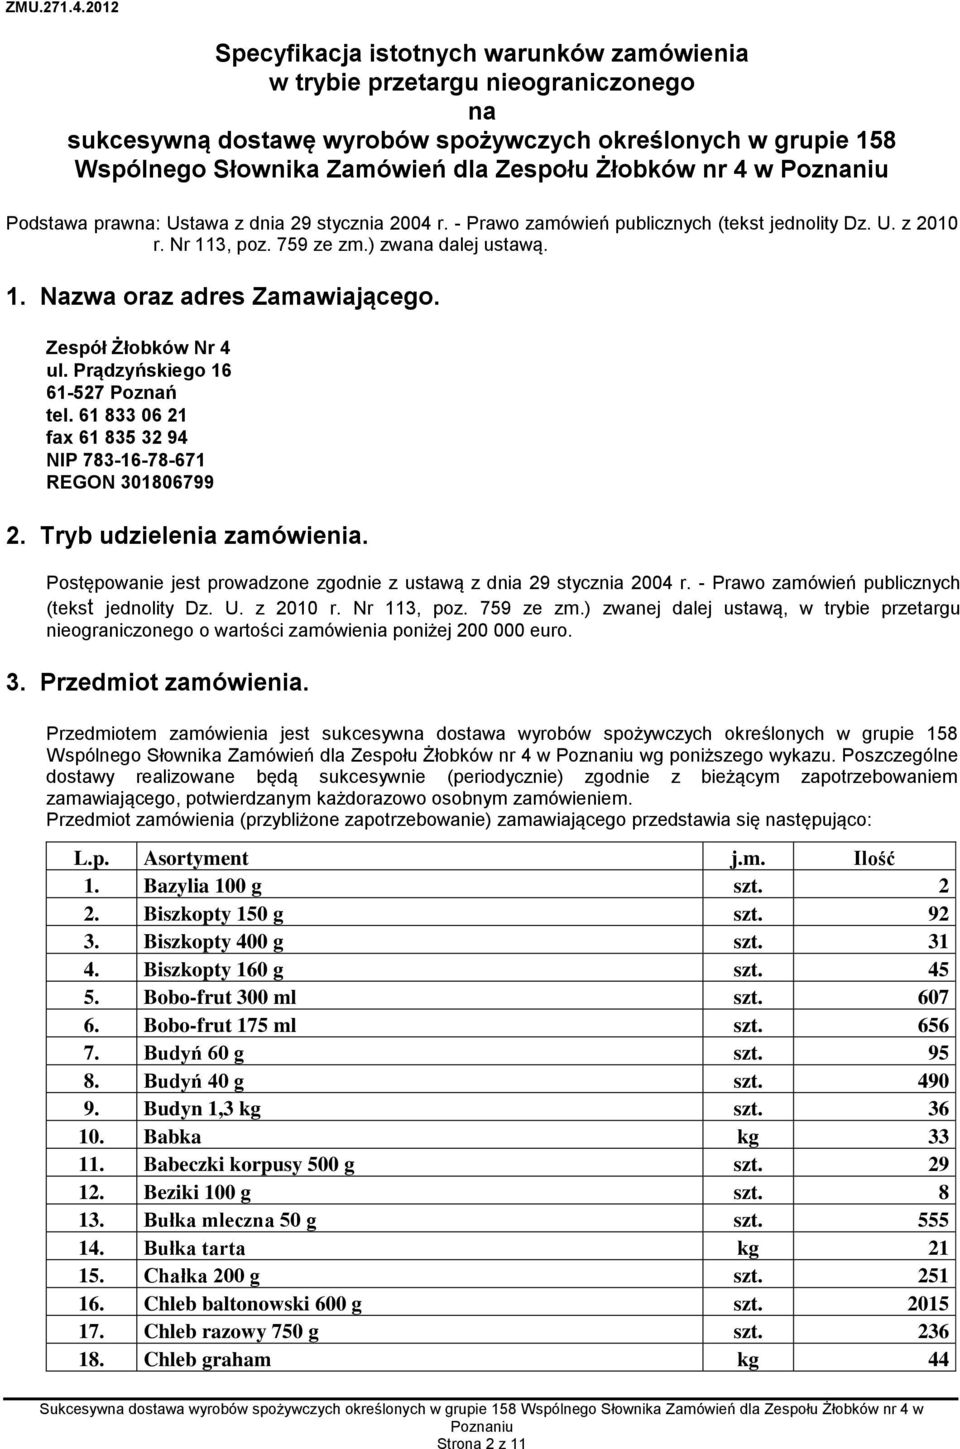 Zespół Żłobków Nr 4 ul. Prądzyńskiego 16 61-527 Poznań tel. 61 833 06 21 fax 61 835 32 94 NIP 783-16-78-671 REGON 301806799 2. Tryb udzielenia zamówienia.